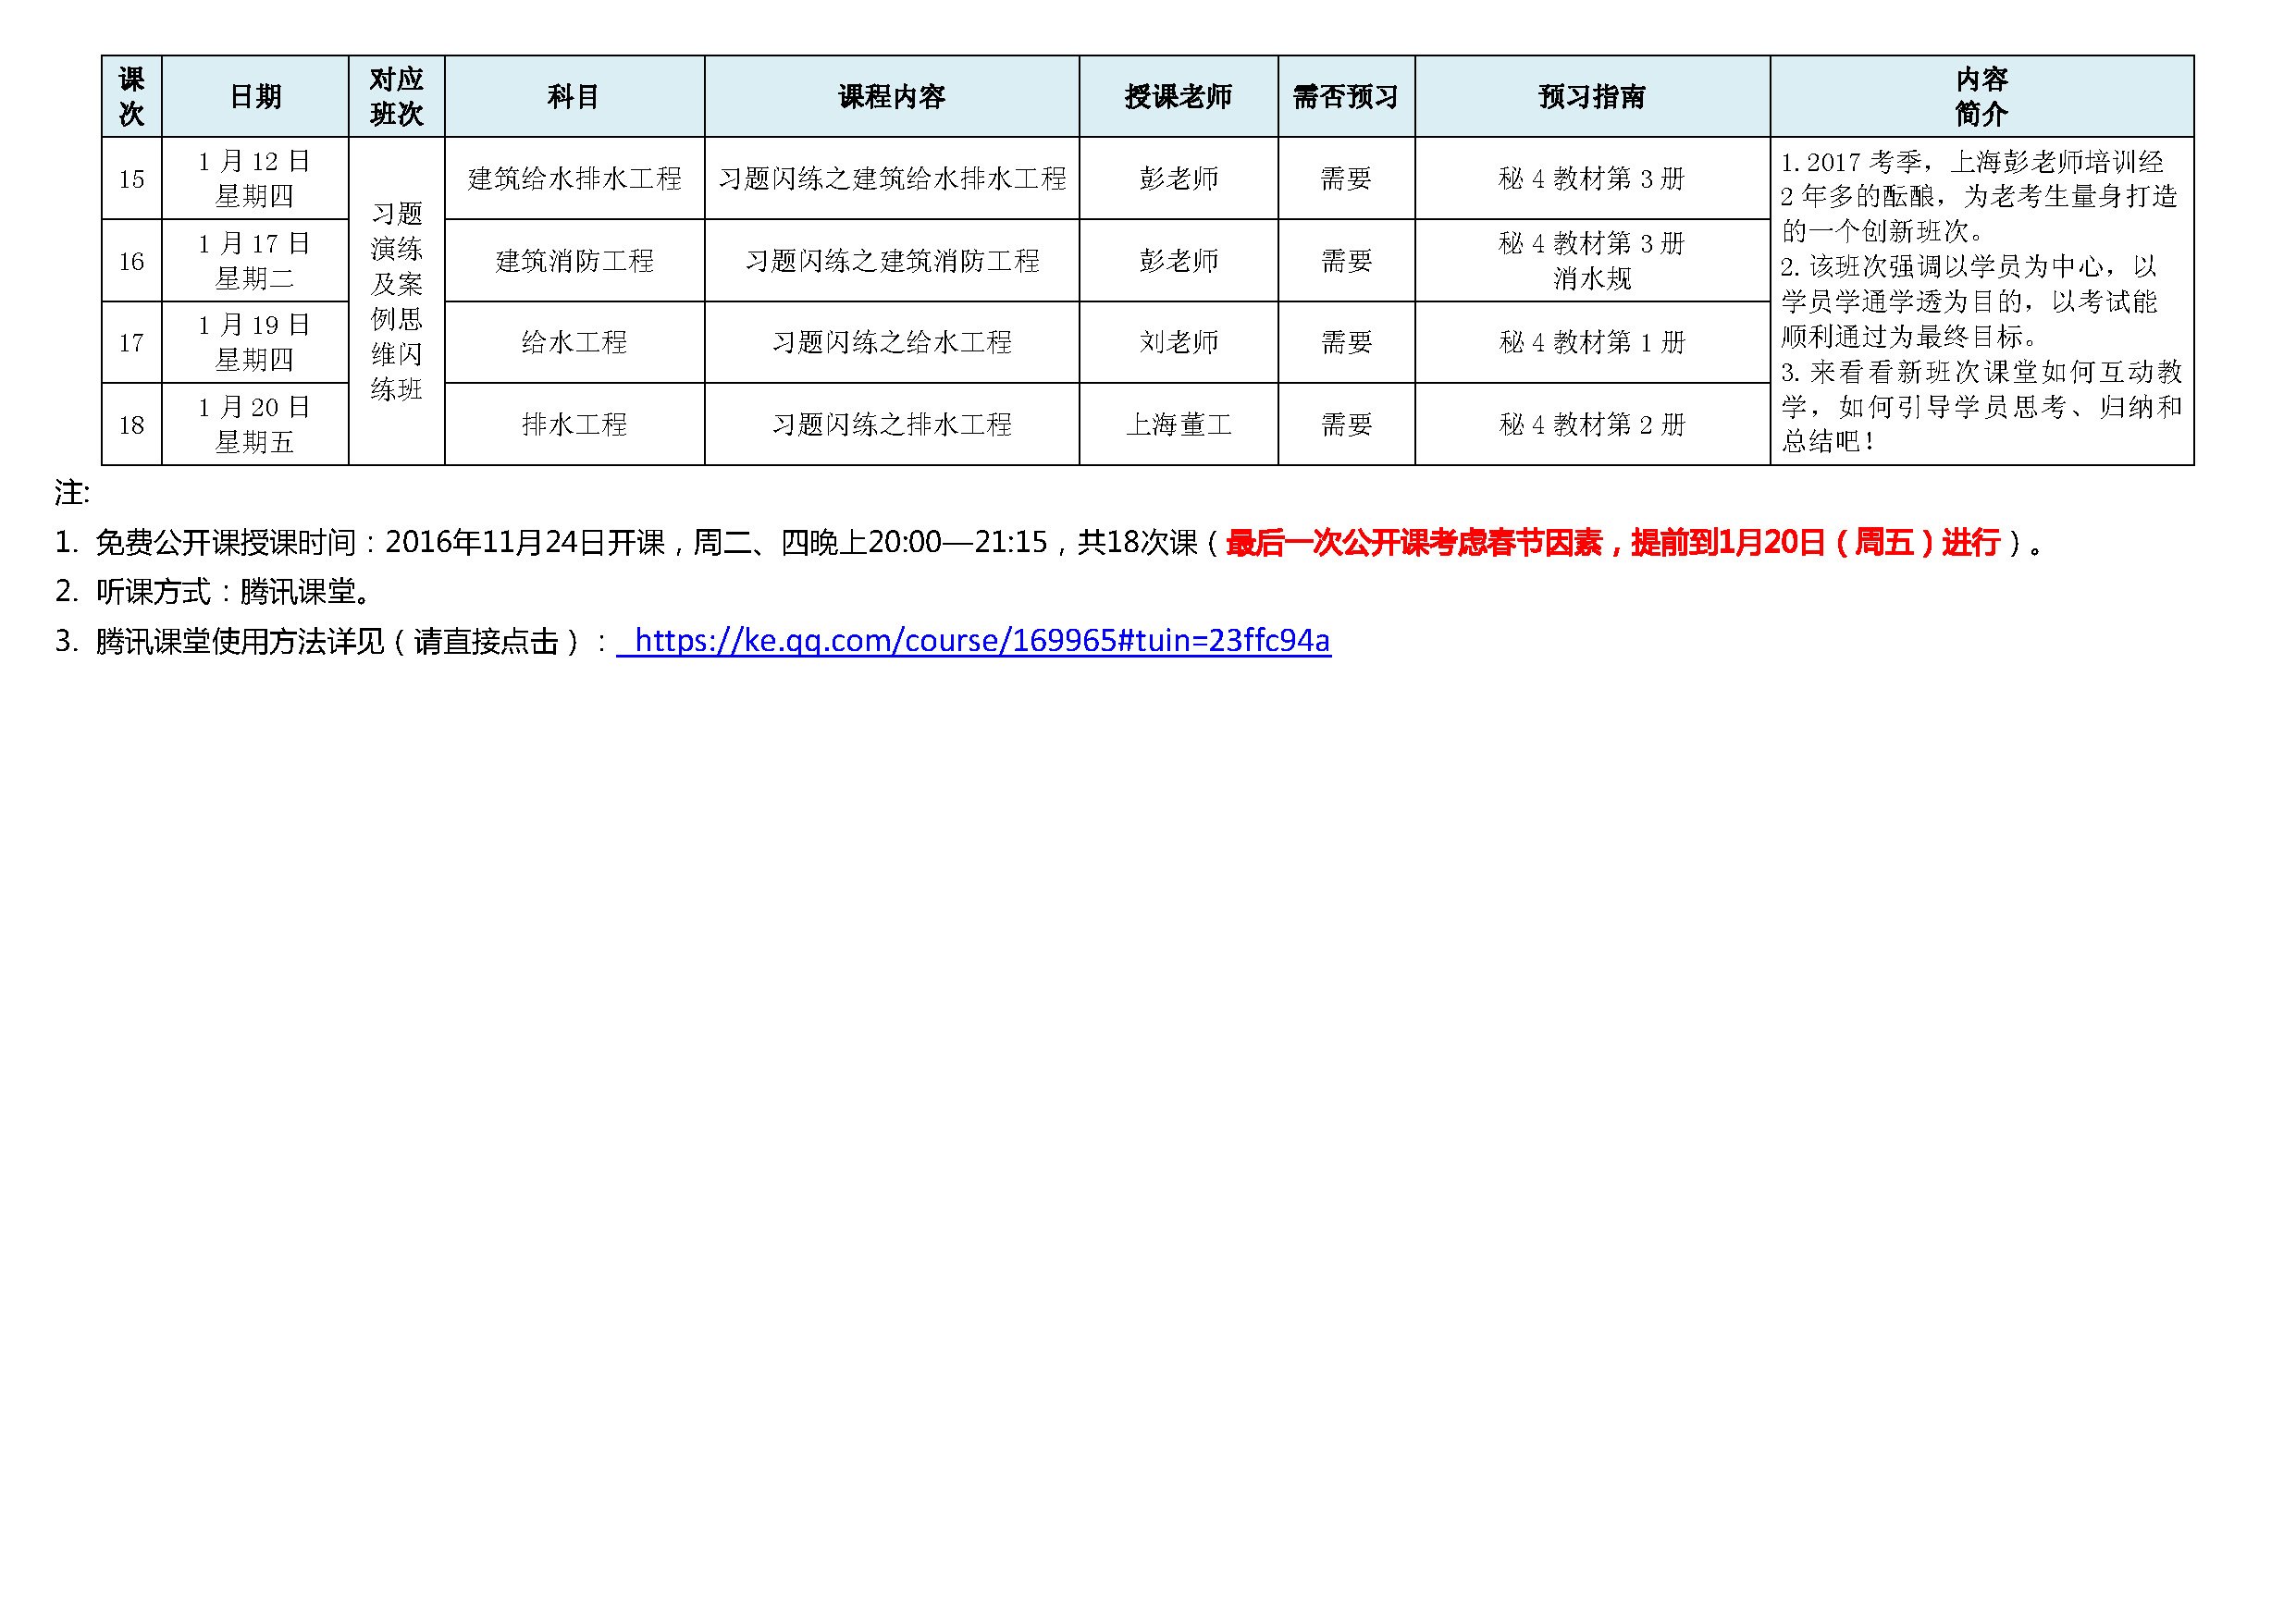 2017年度上海彭老师培训注册给排水公开课一览表_页面_2.jpg